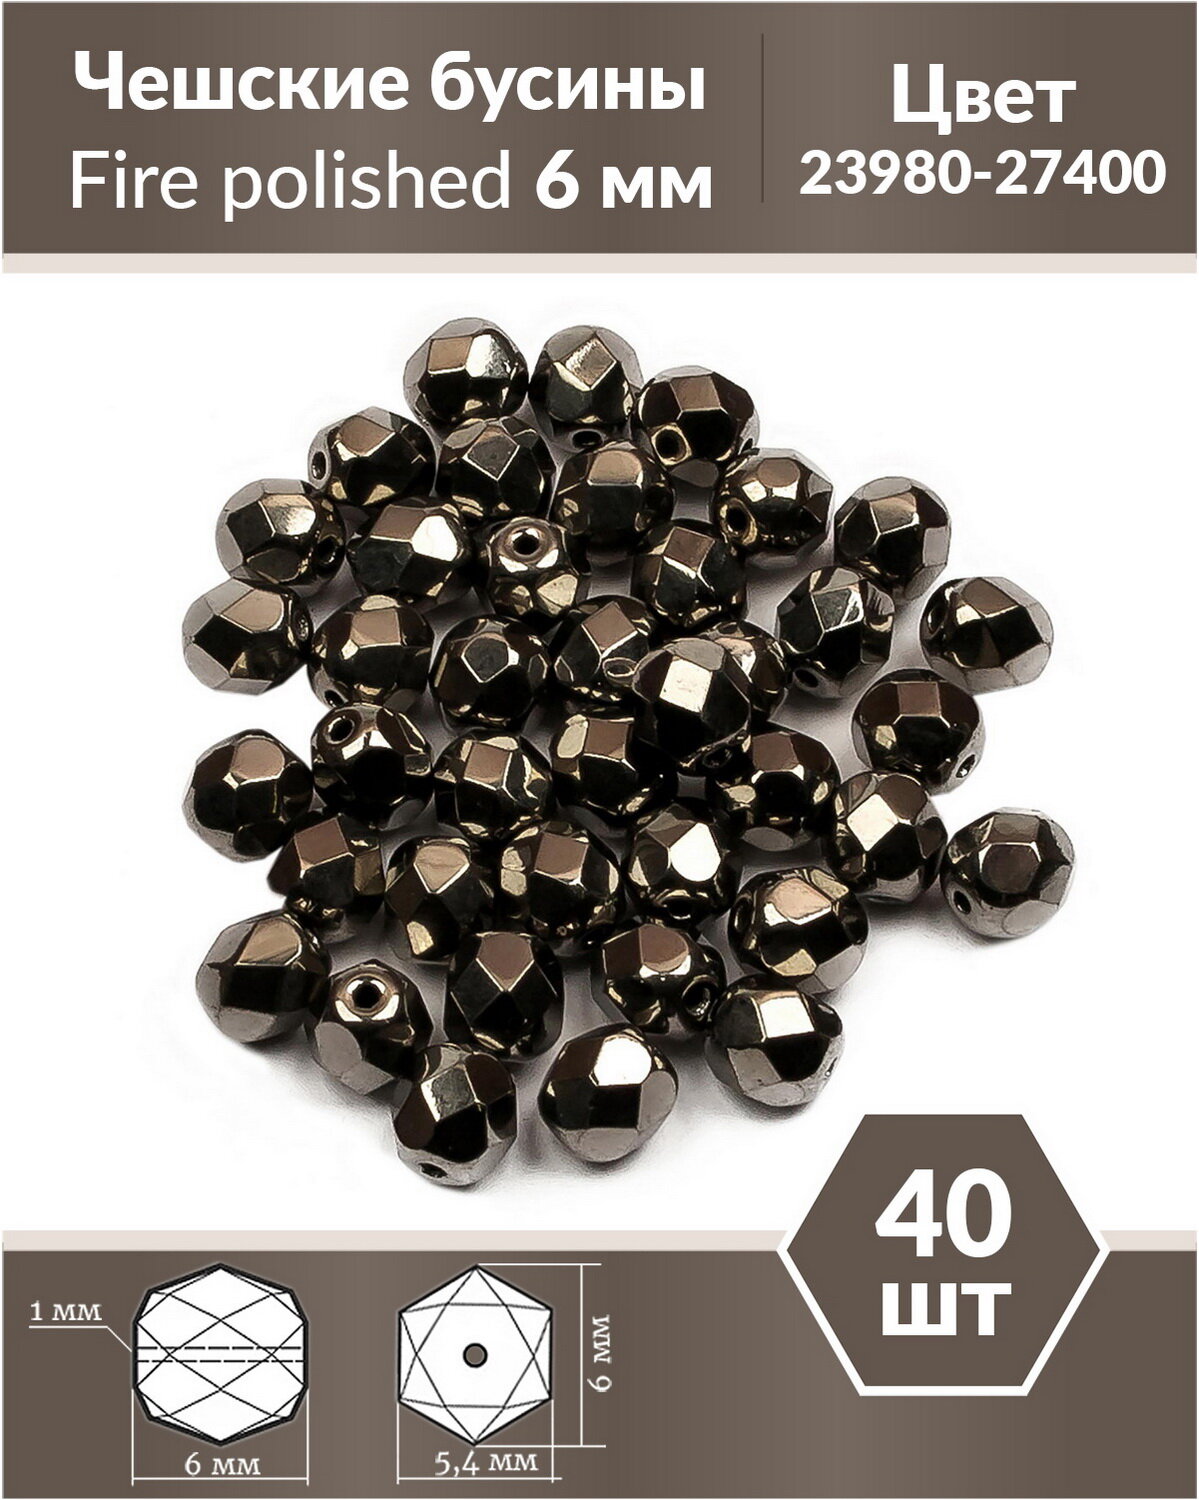 Чешские бусины, Fire Polished Beads, граненые, 6 мм, цвет: Jet Full Chrome, 40 шт.